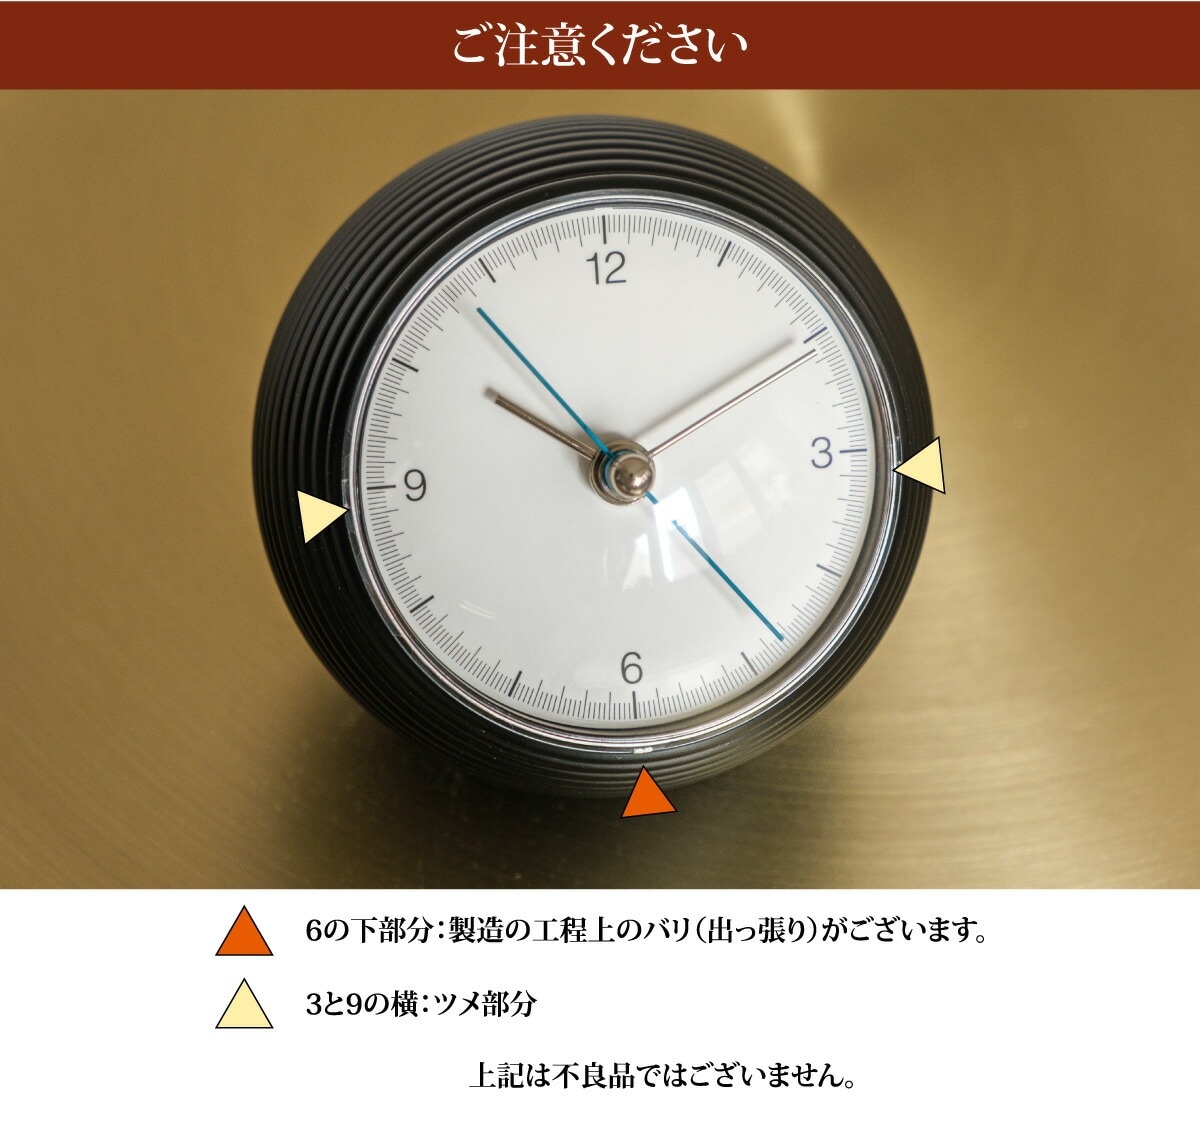 レムノス 球体のおしゃれな置き時計 earth clock（アースクロック） 置時計 丸い時計 テーブルクロック スイープムーブメント デザイン時計  プレゼント ギフト 贈り物 ホワイト ブラック モノトーン | おしゃれな家具・インテリアの通販 大阪マルキン家具